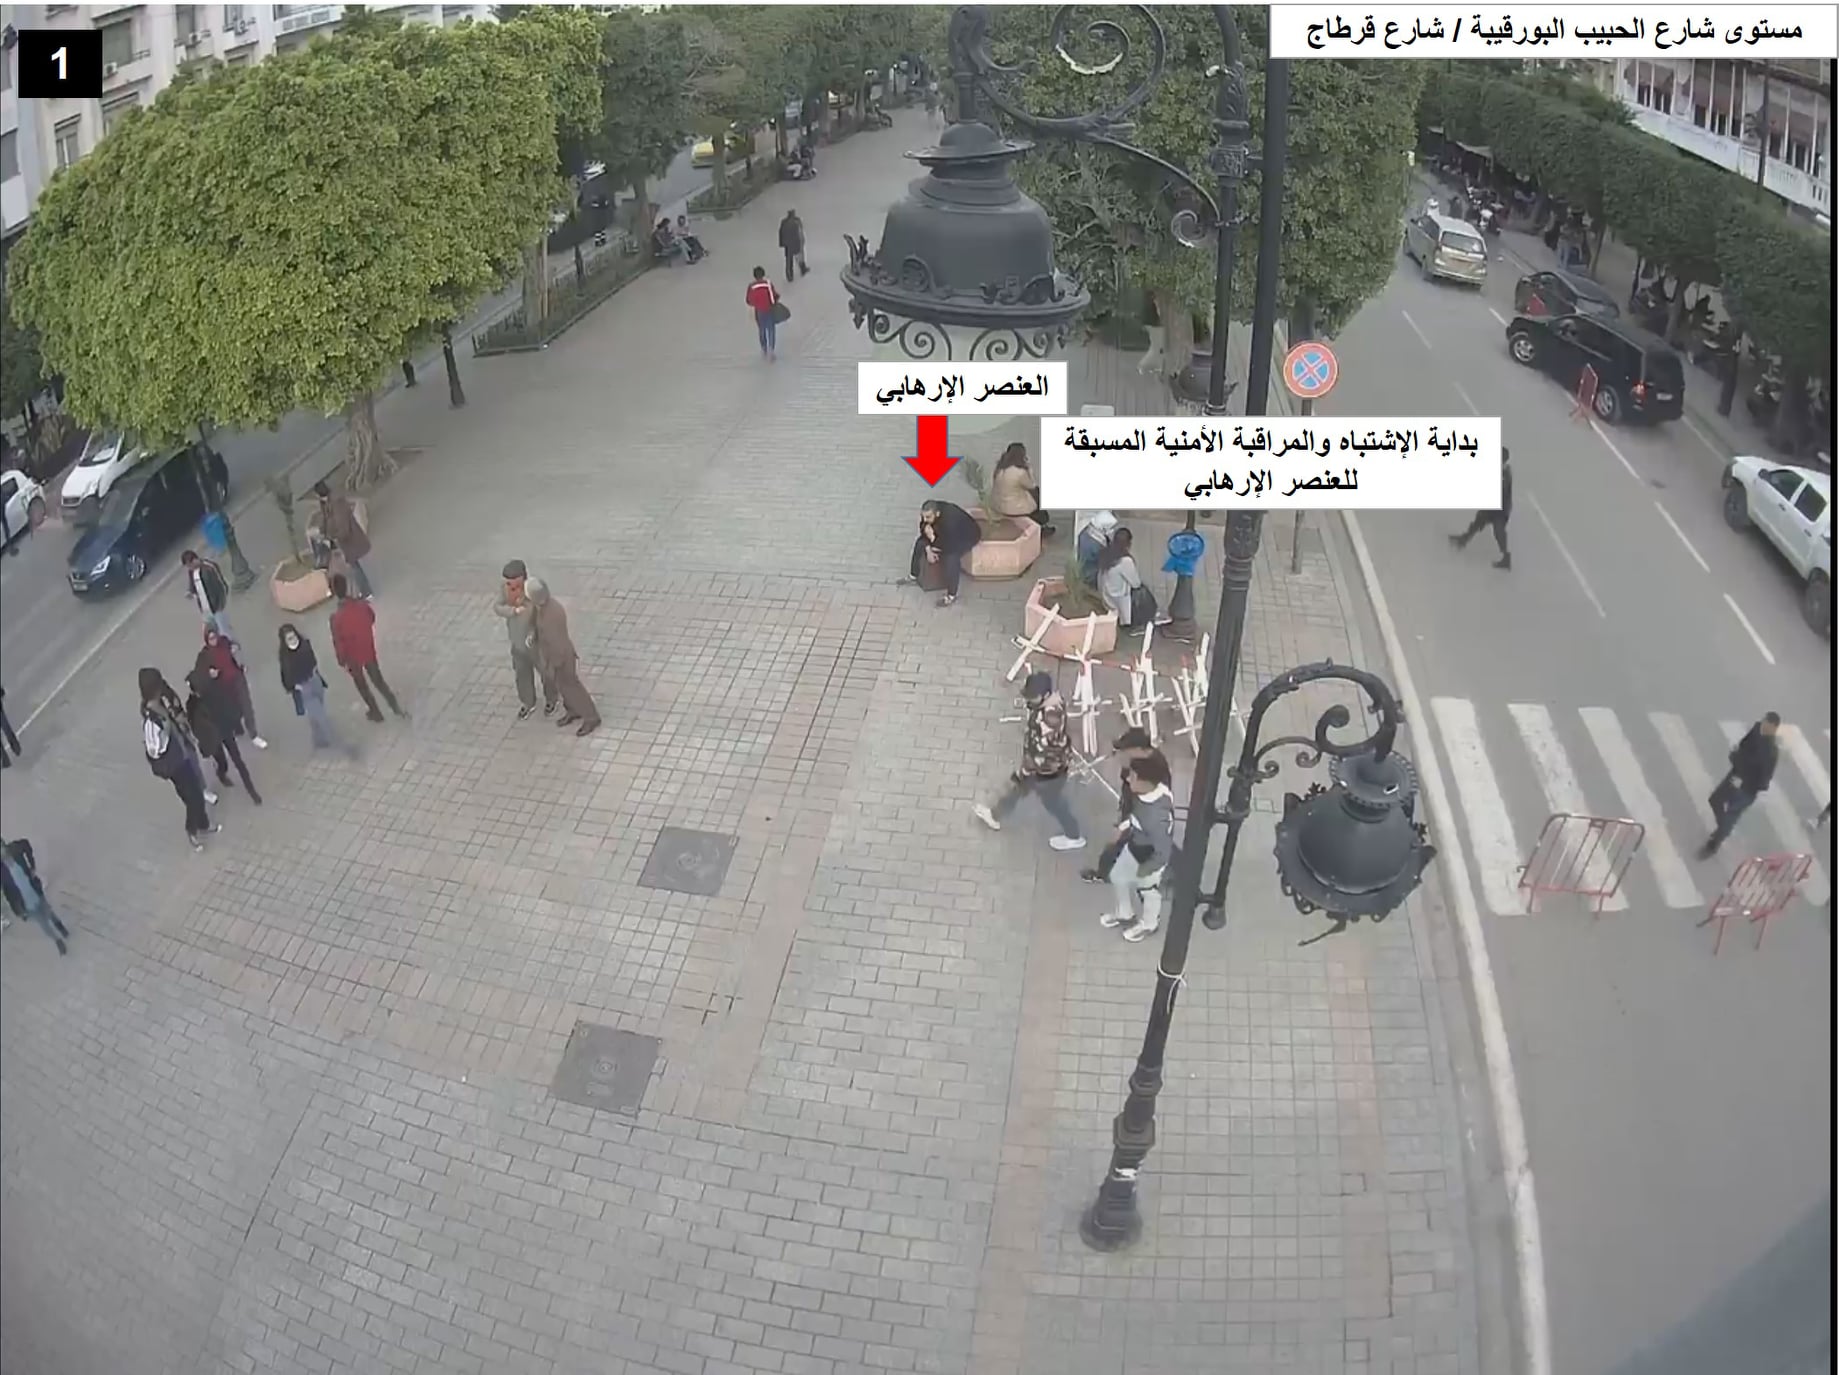 في الردّ على المشككين/ وزارة الداخلية تنشر صور جديدة عن المراقبة الامنية للارهابي في شارع الحبيب بورقيبة